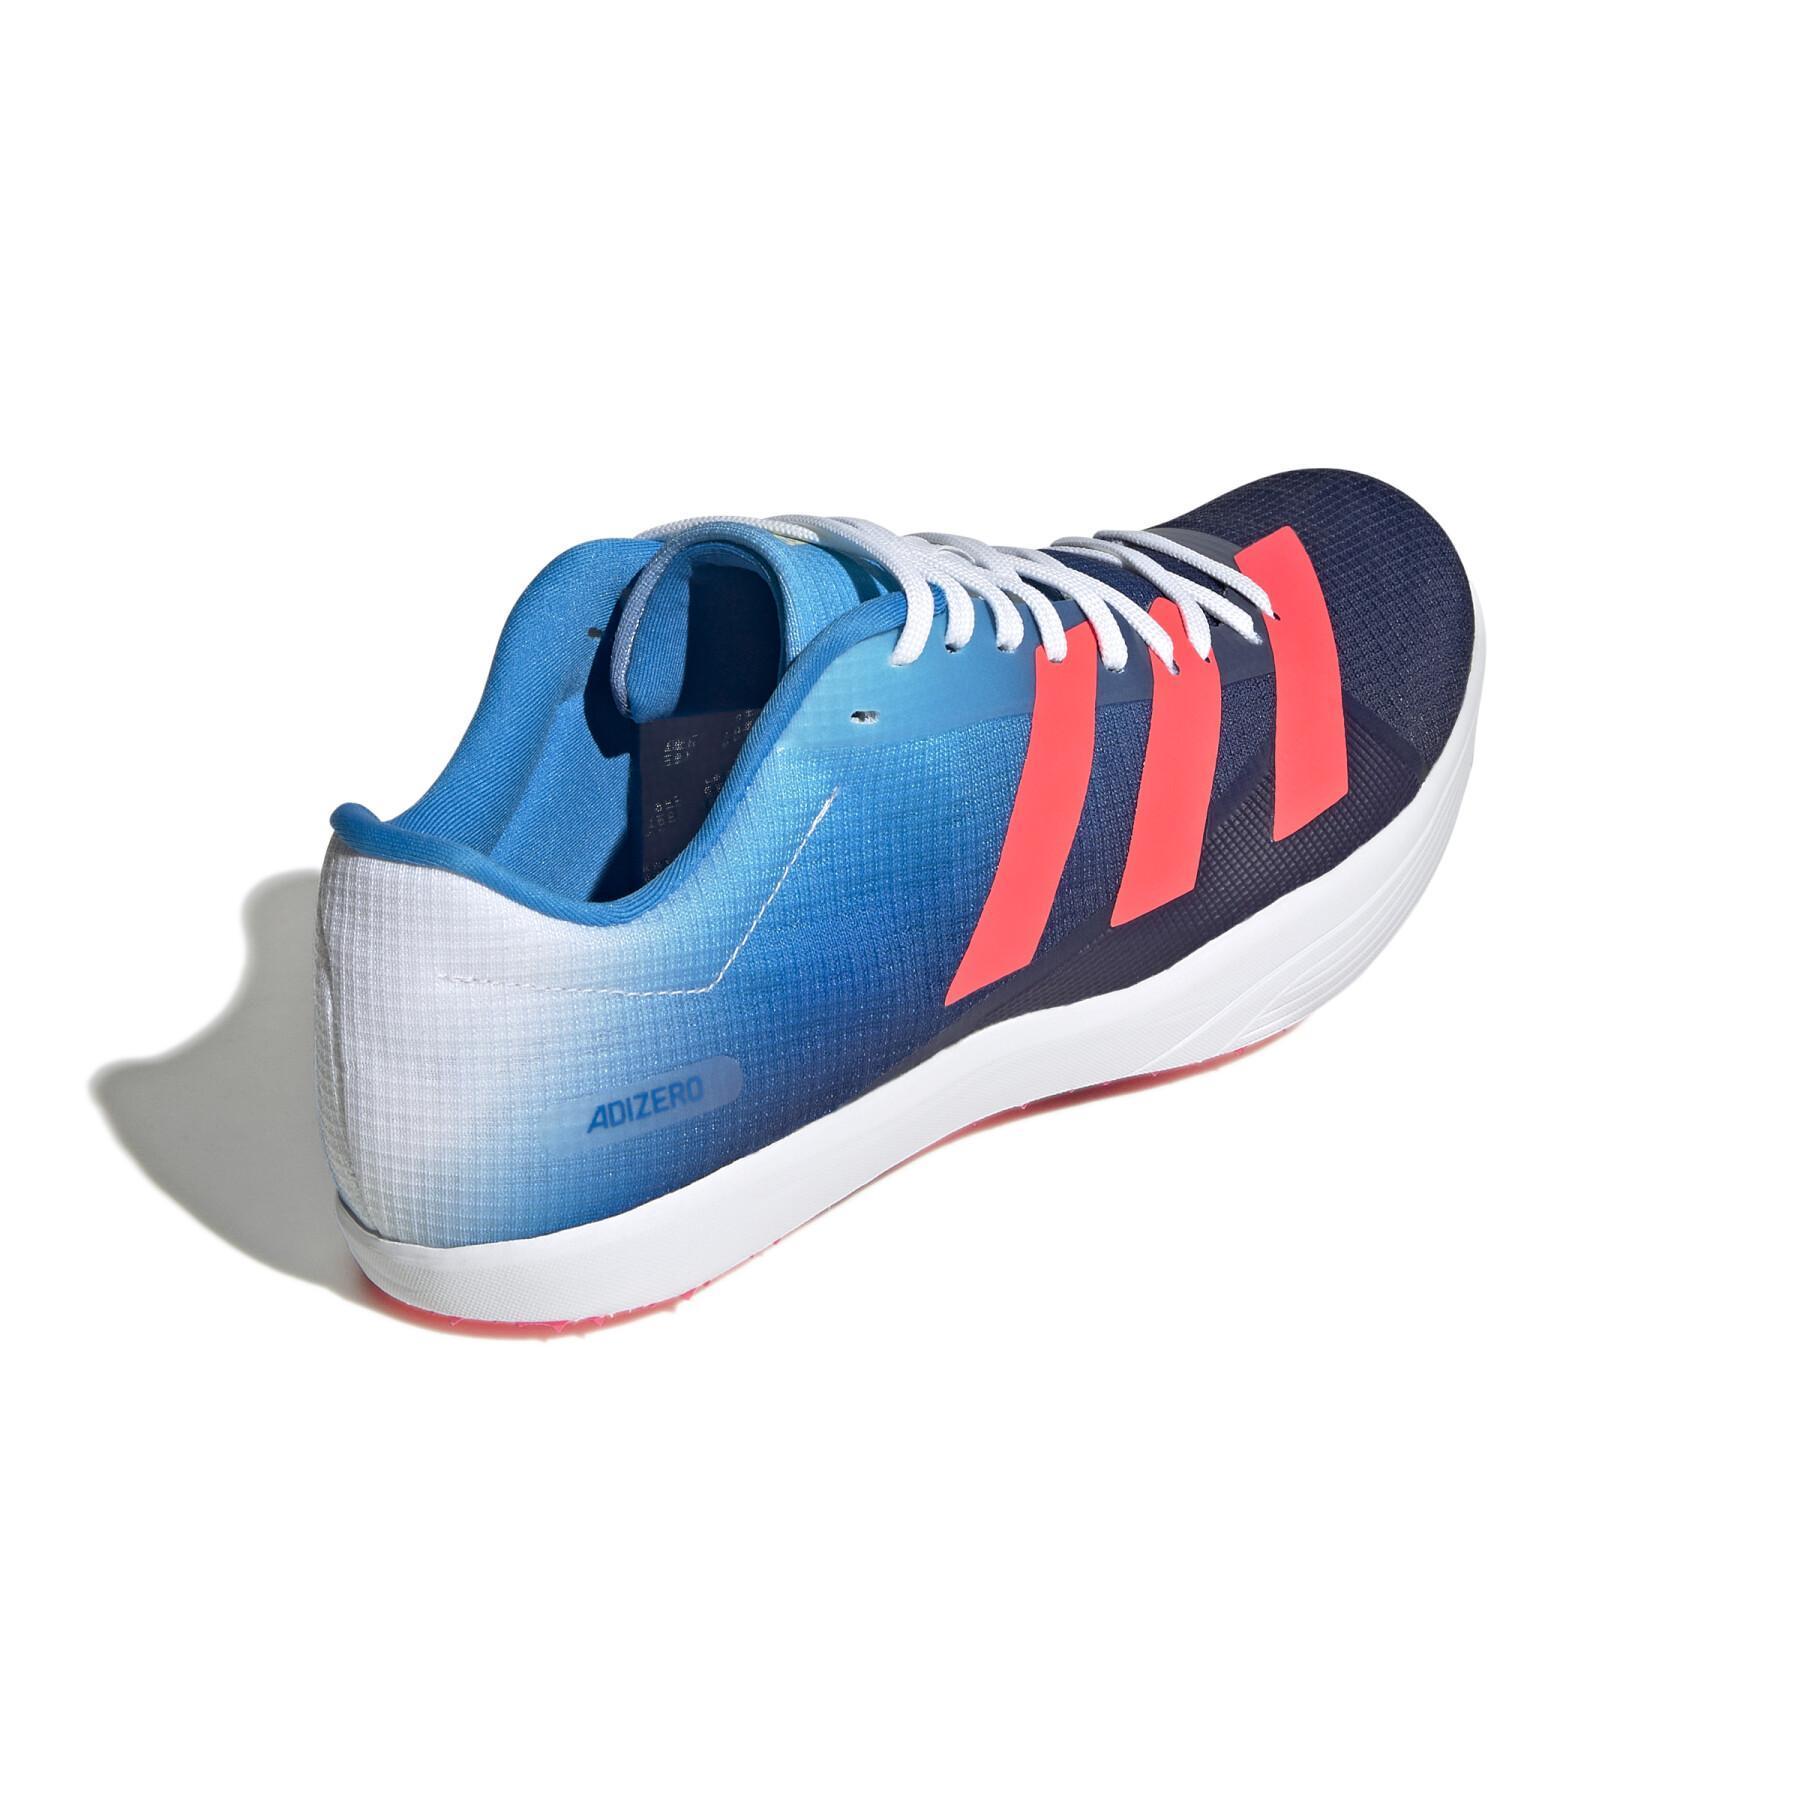 Chaussures de saut en Longueur adidas Adizero